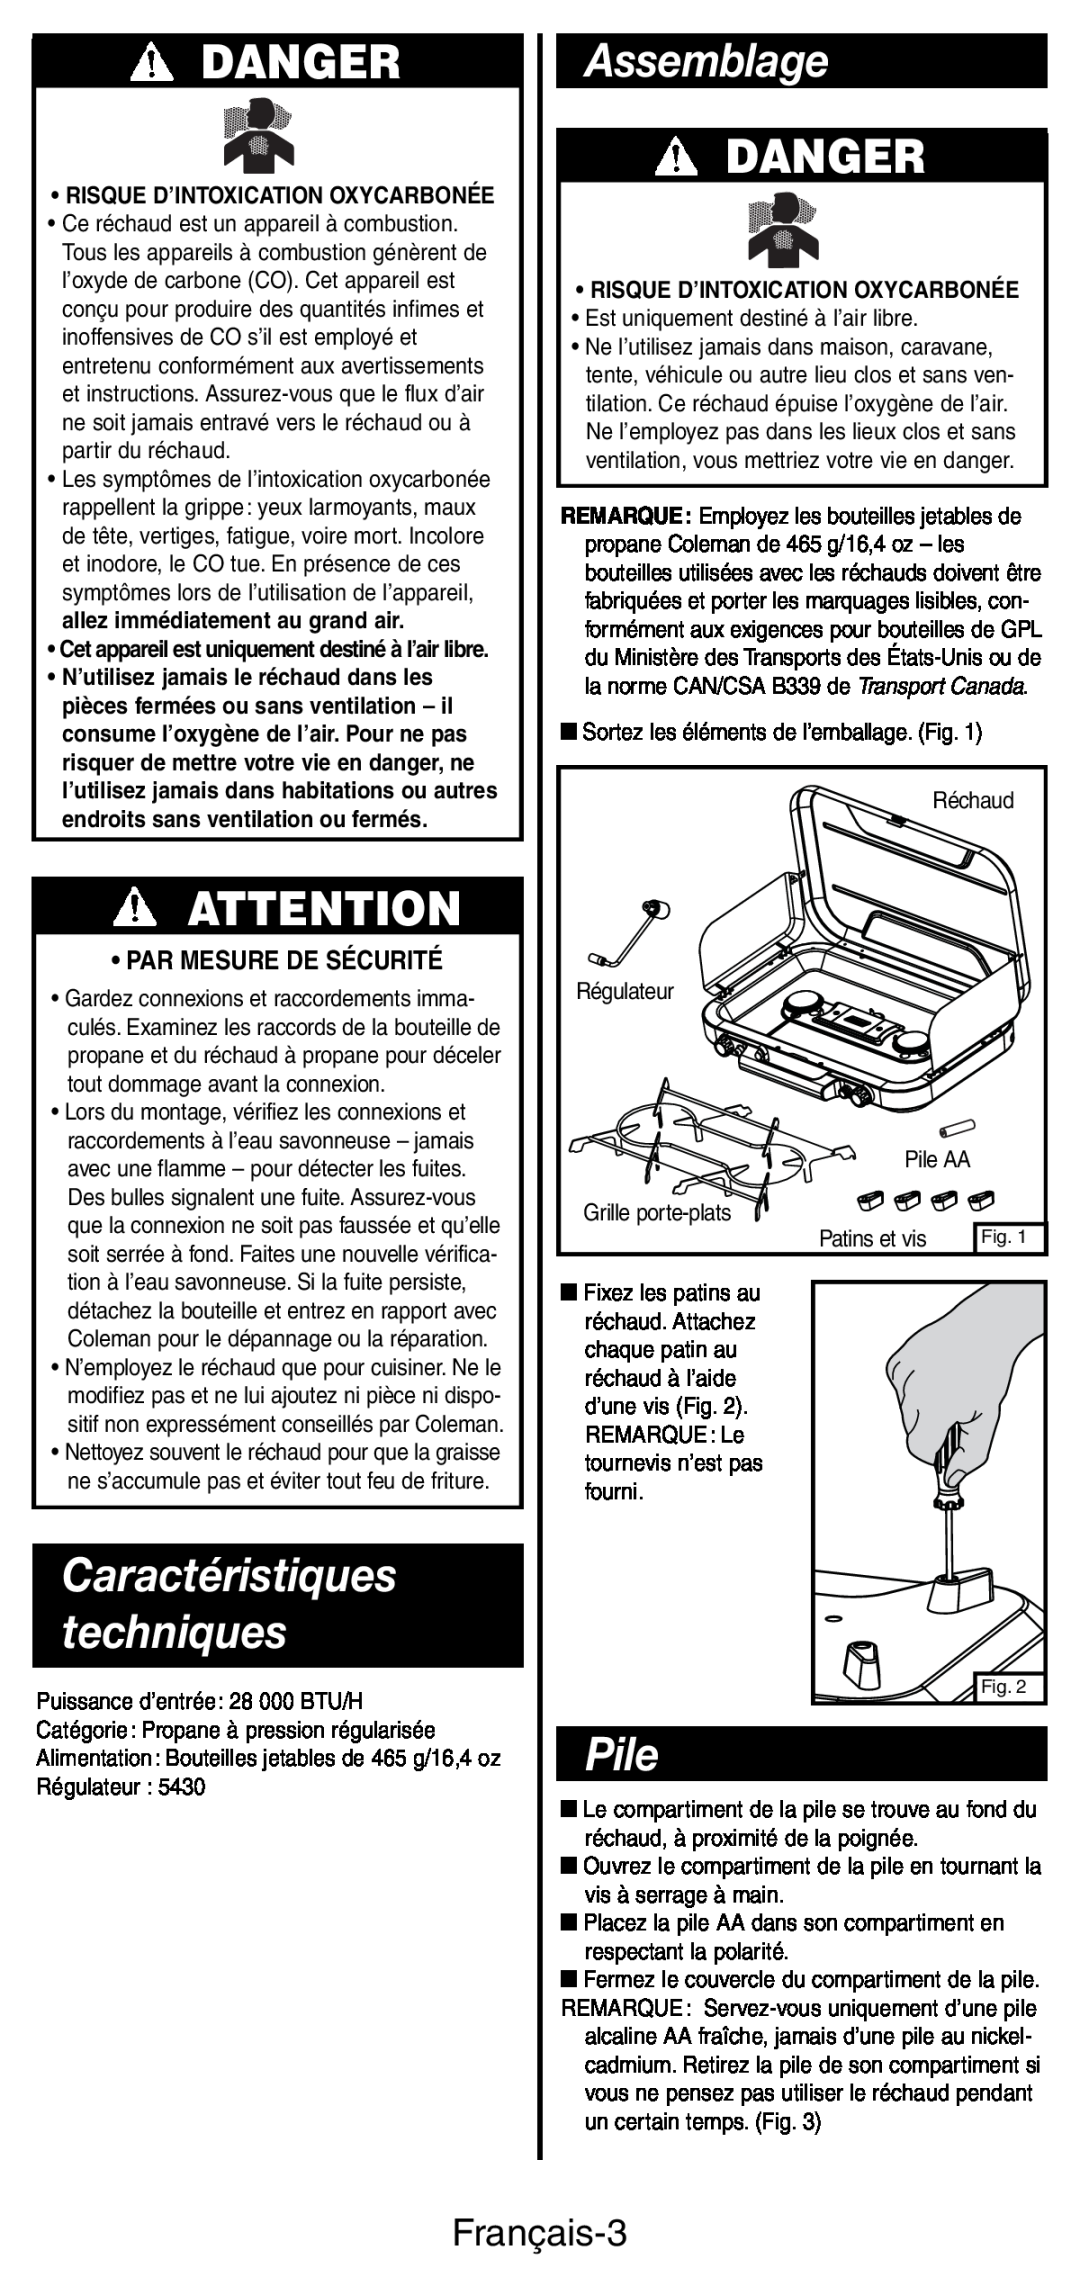 Coleman 5444 Series manual Assemblage, Pile, Caractéristiques techniques, Danger, Français-3, Par Mesure De Sécurité 